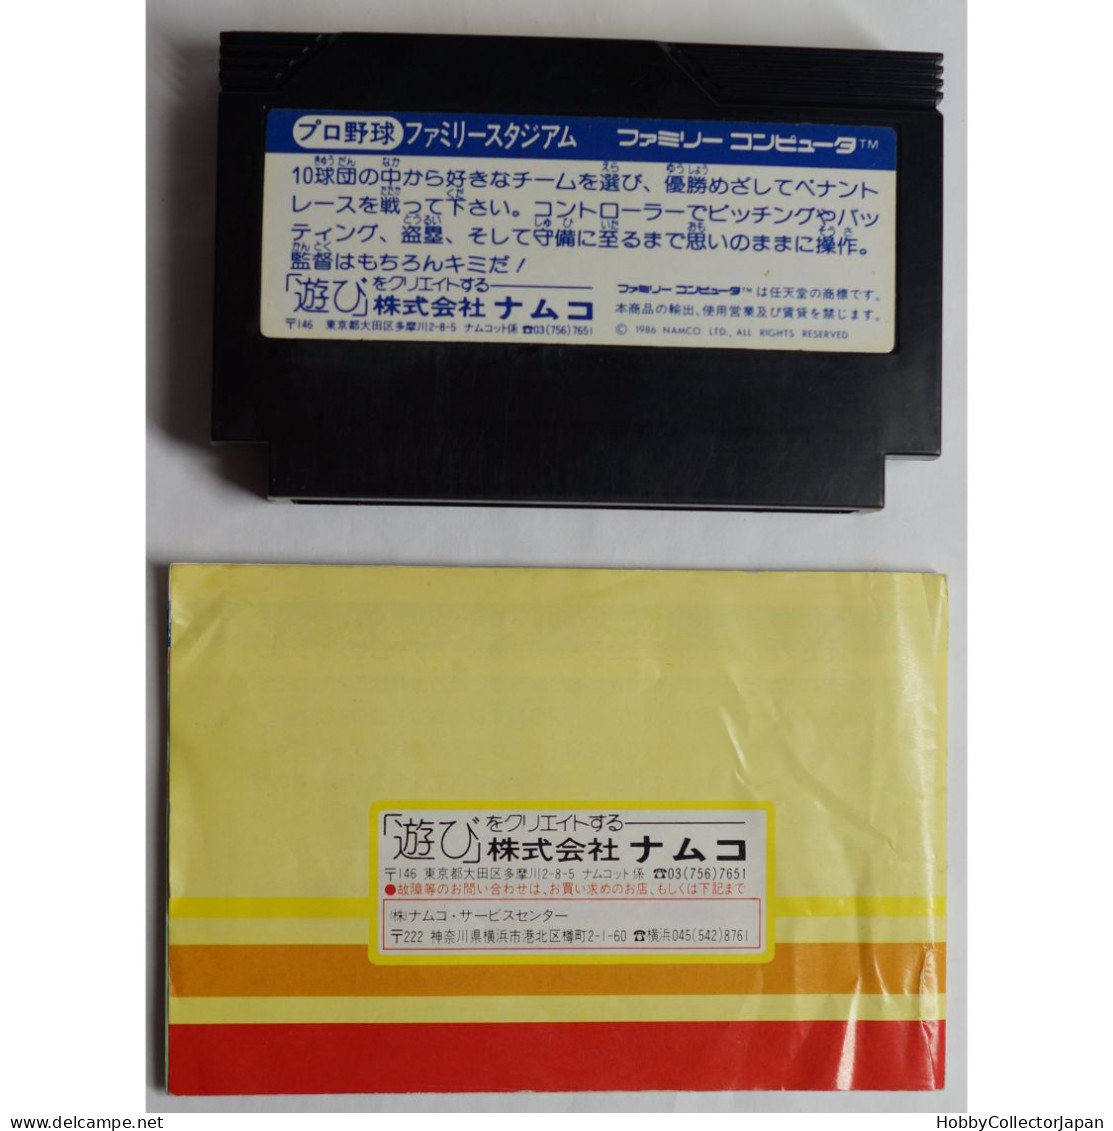 Family Stadium Famicom 4907892000223 - Famicom